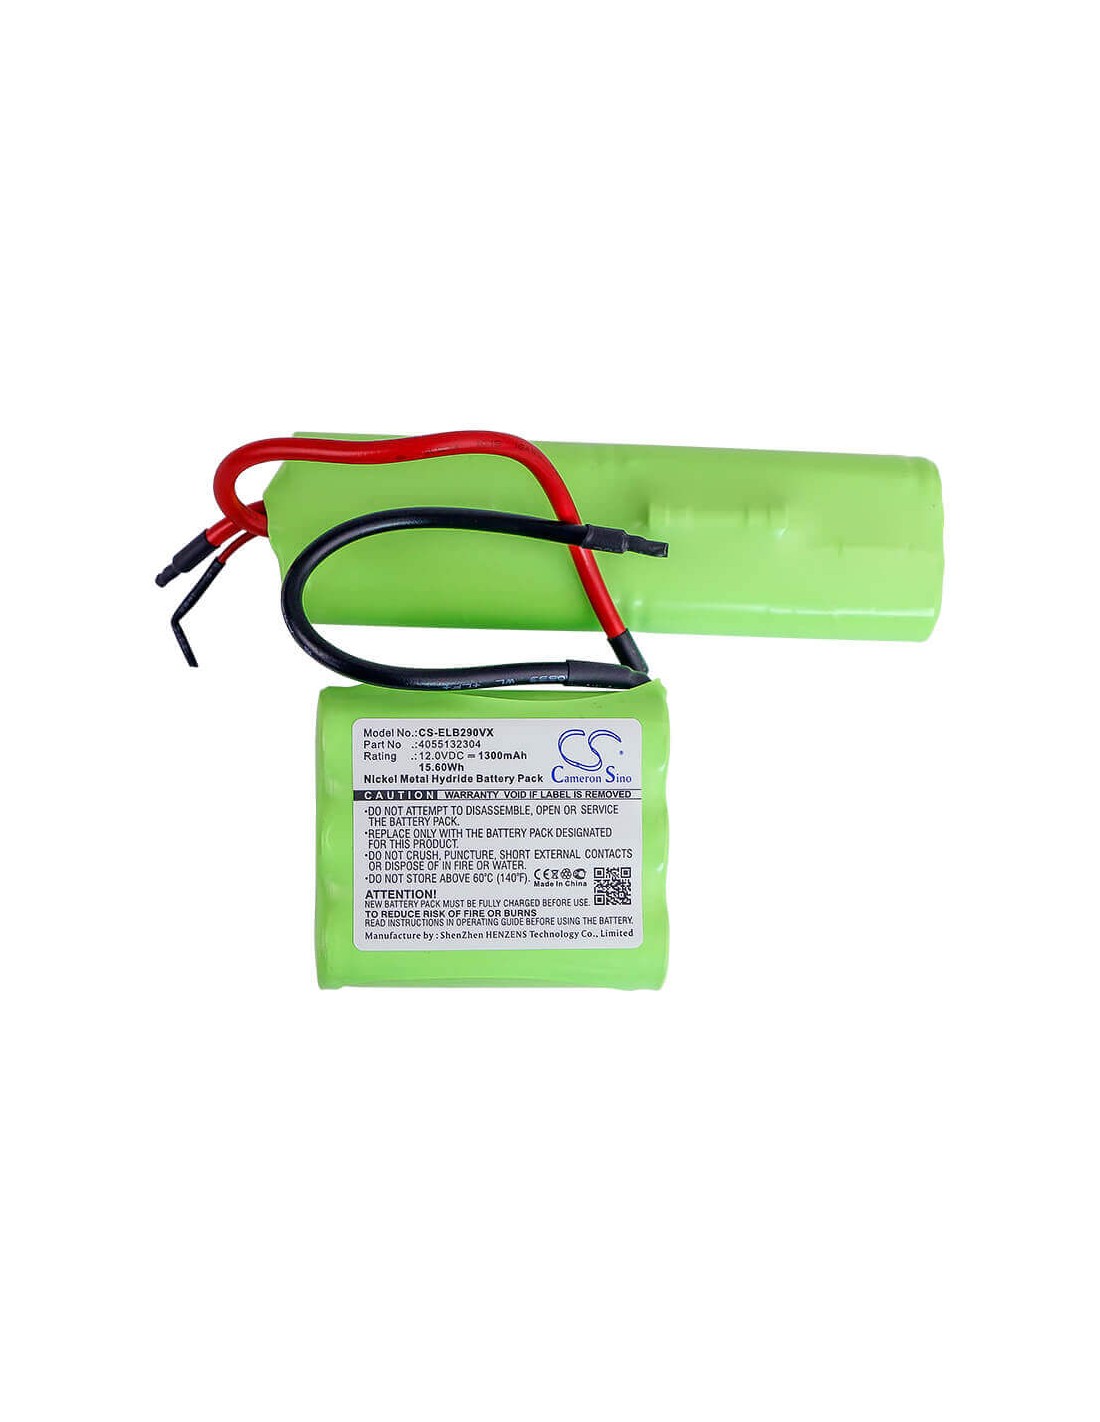 Battery for Aeg, 900165577, 900165579 12V, 1300mAh - 15.60Wh